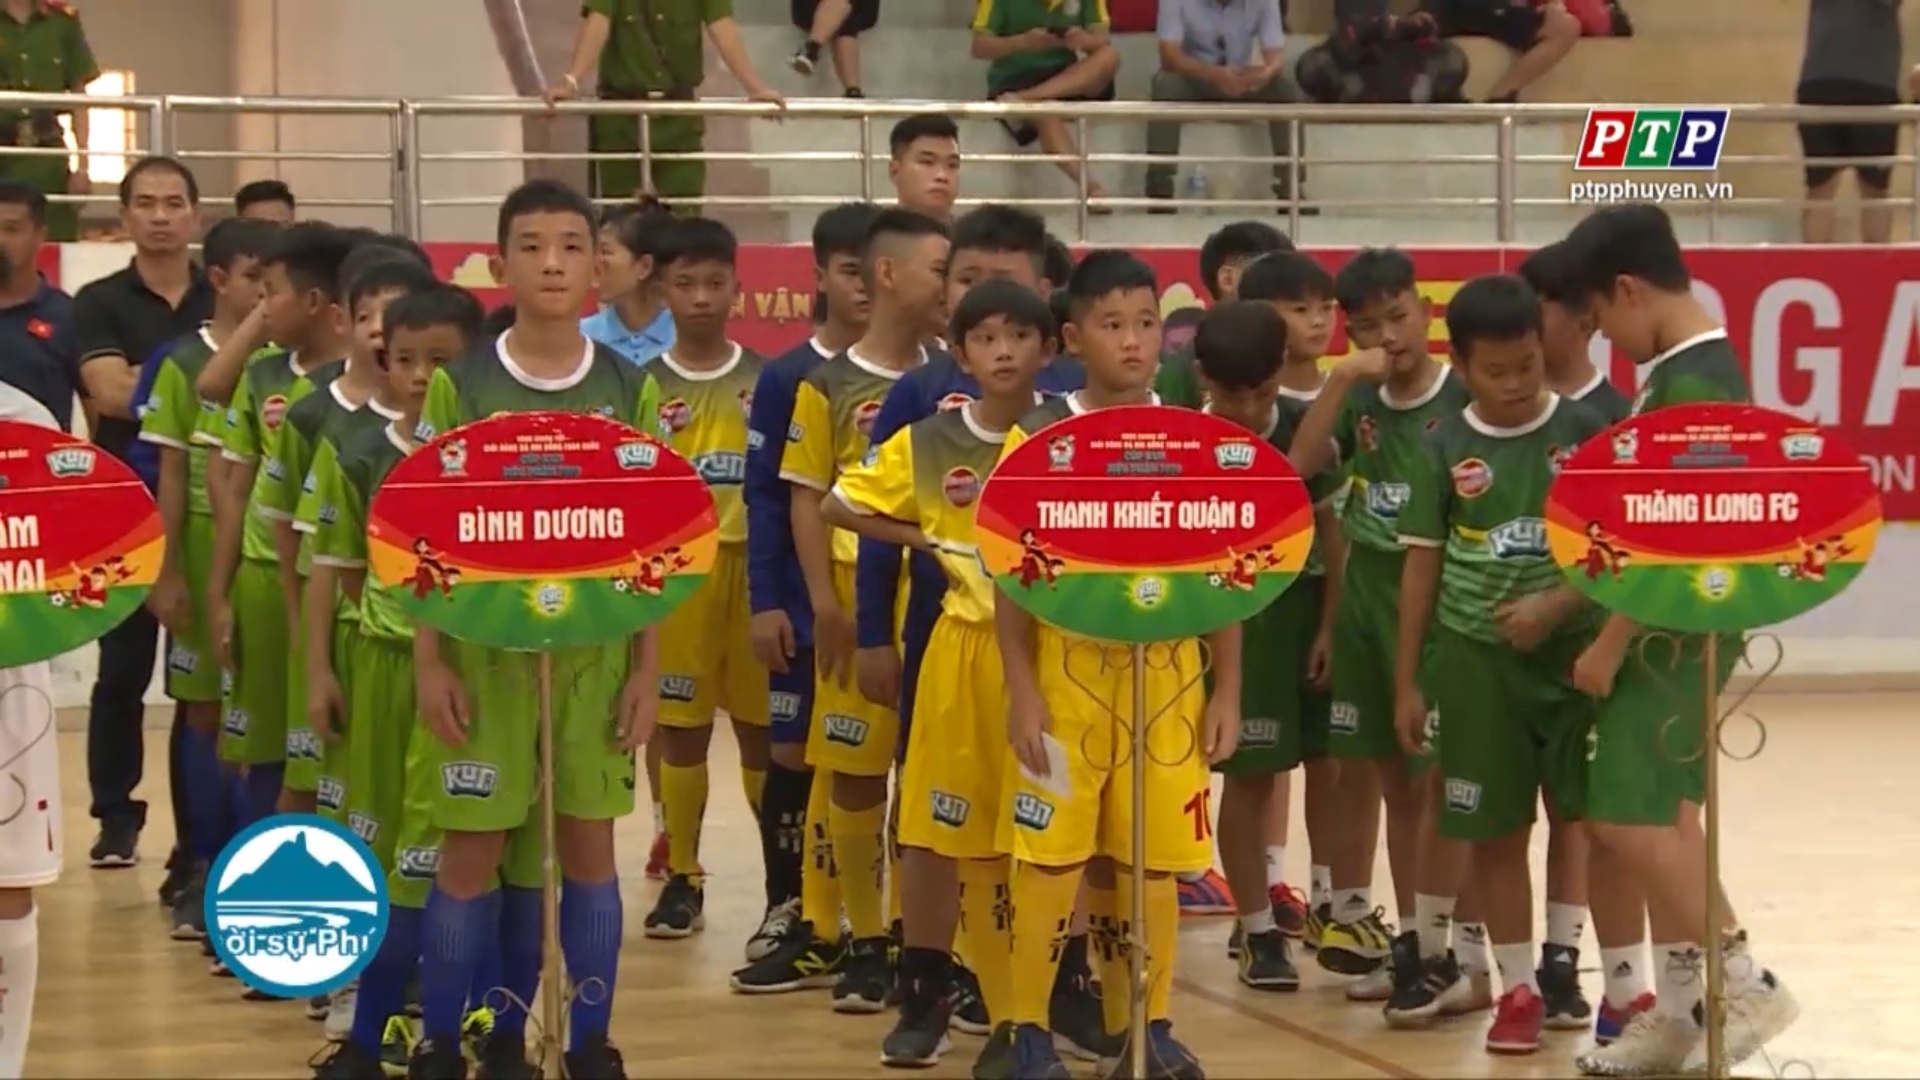 16 đội bóng tranh tài vòng chung kết giải bóng đá Nhi Đồng toàn quốc cúp Kun siêu phàm năm 2020